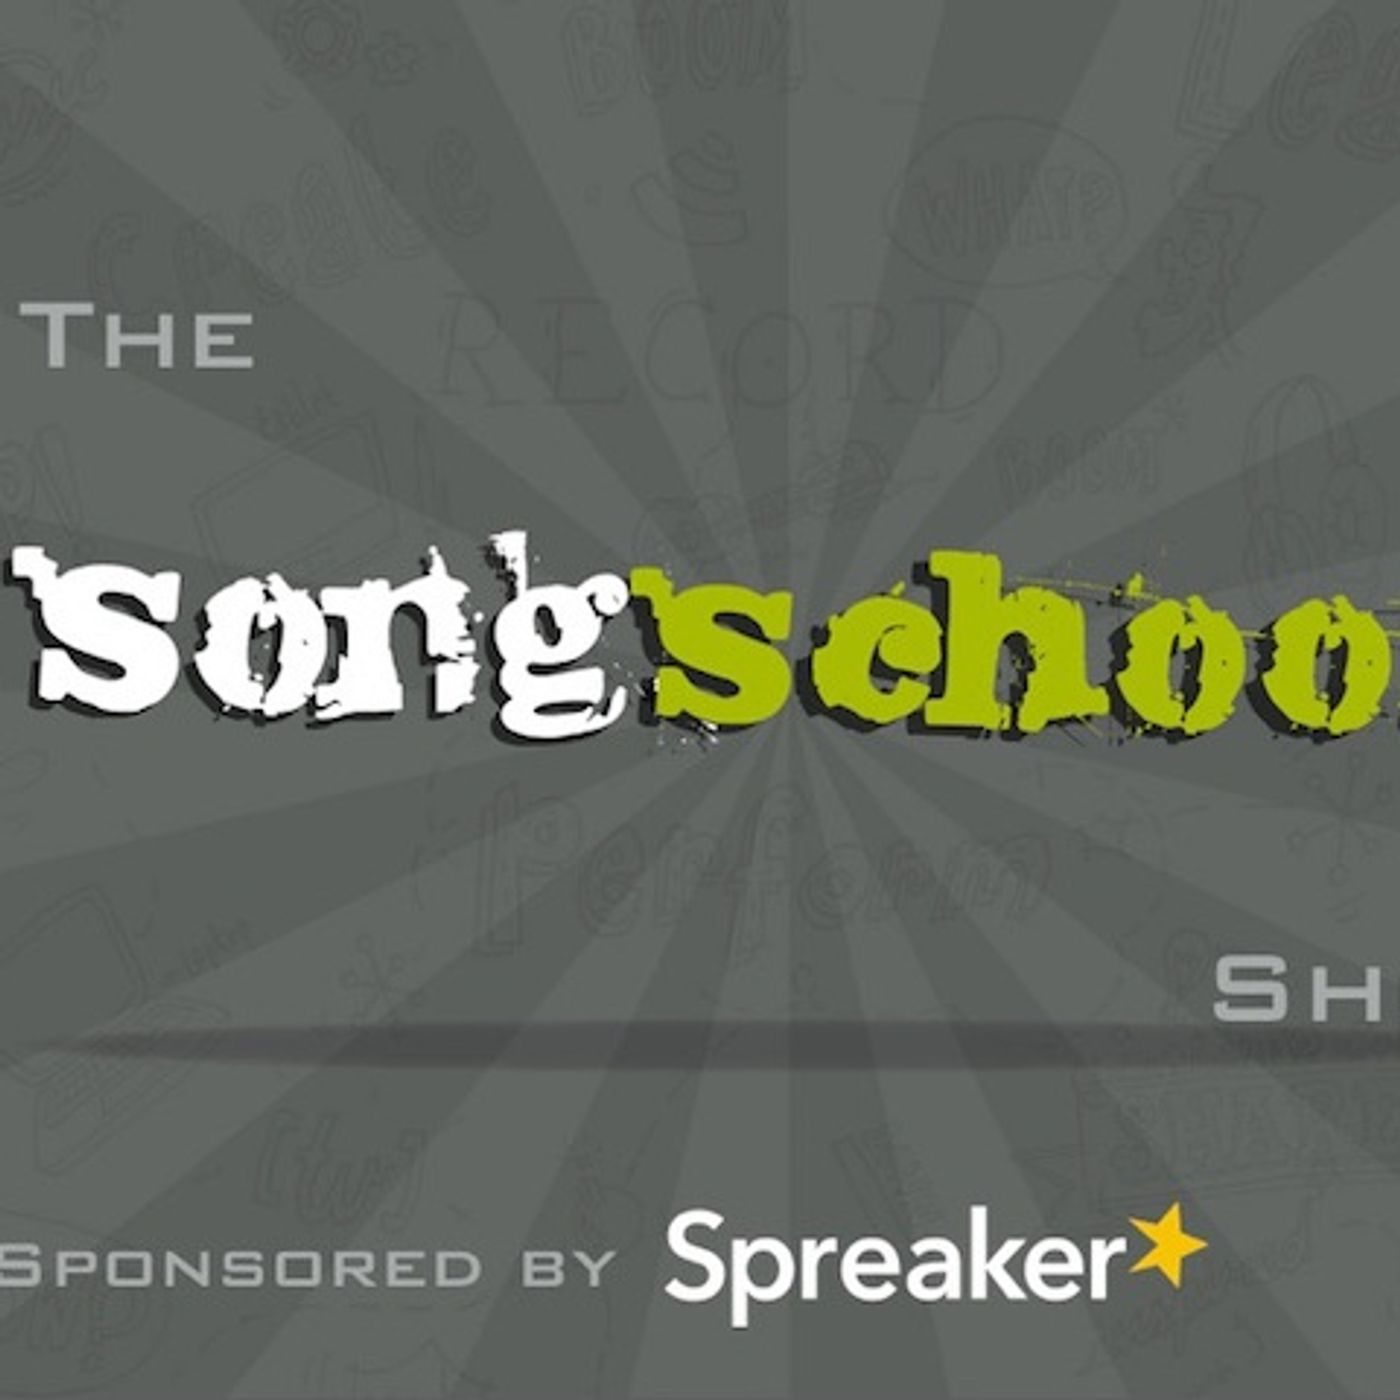 The Songschool Show @ Portmarnock CS 1